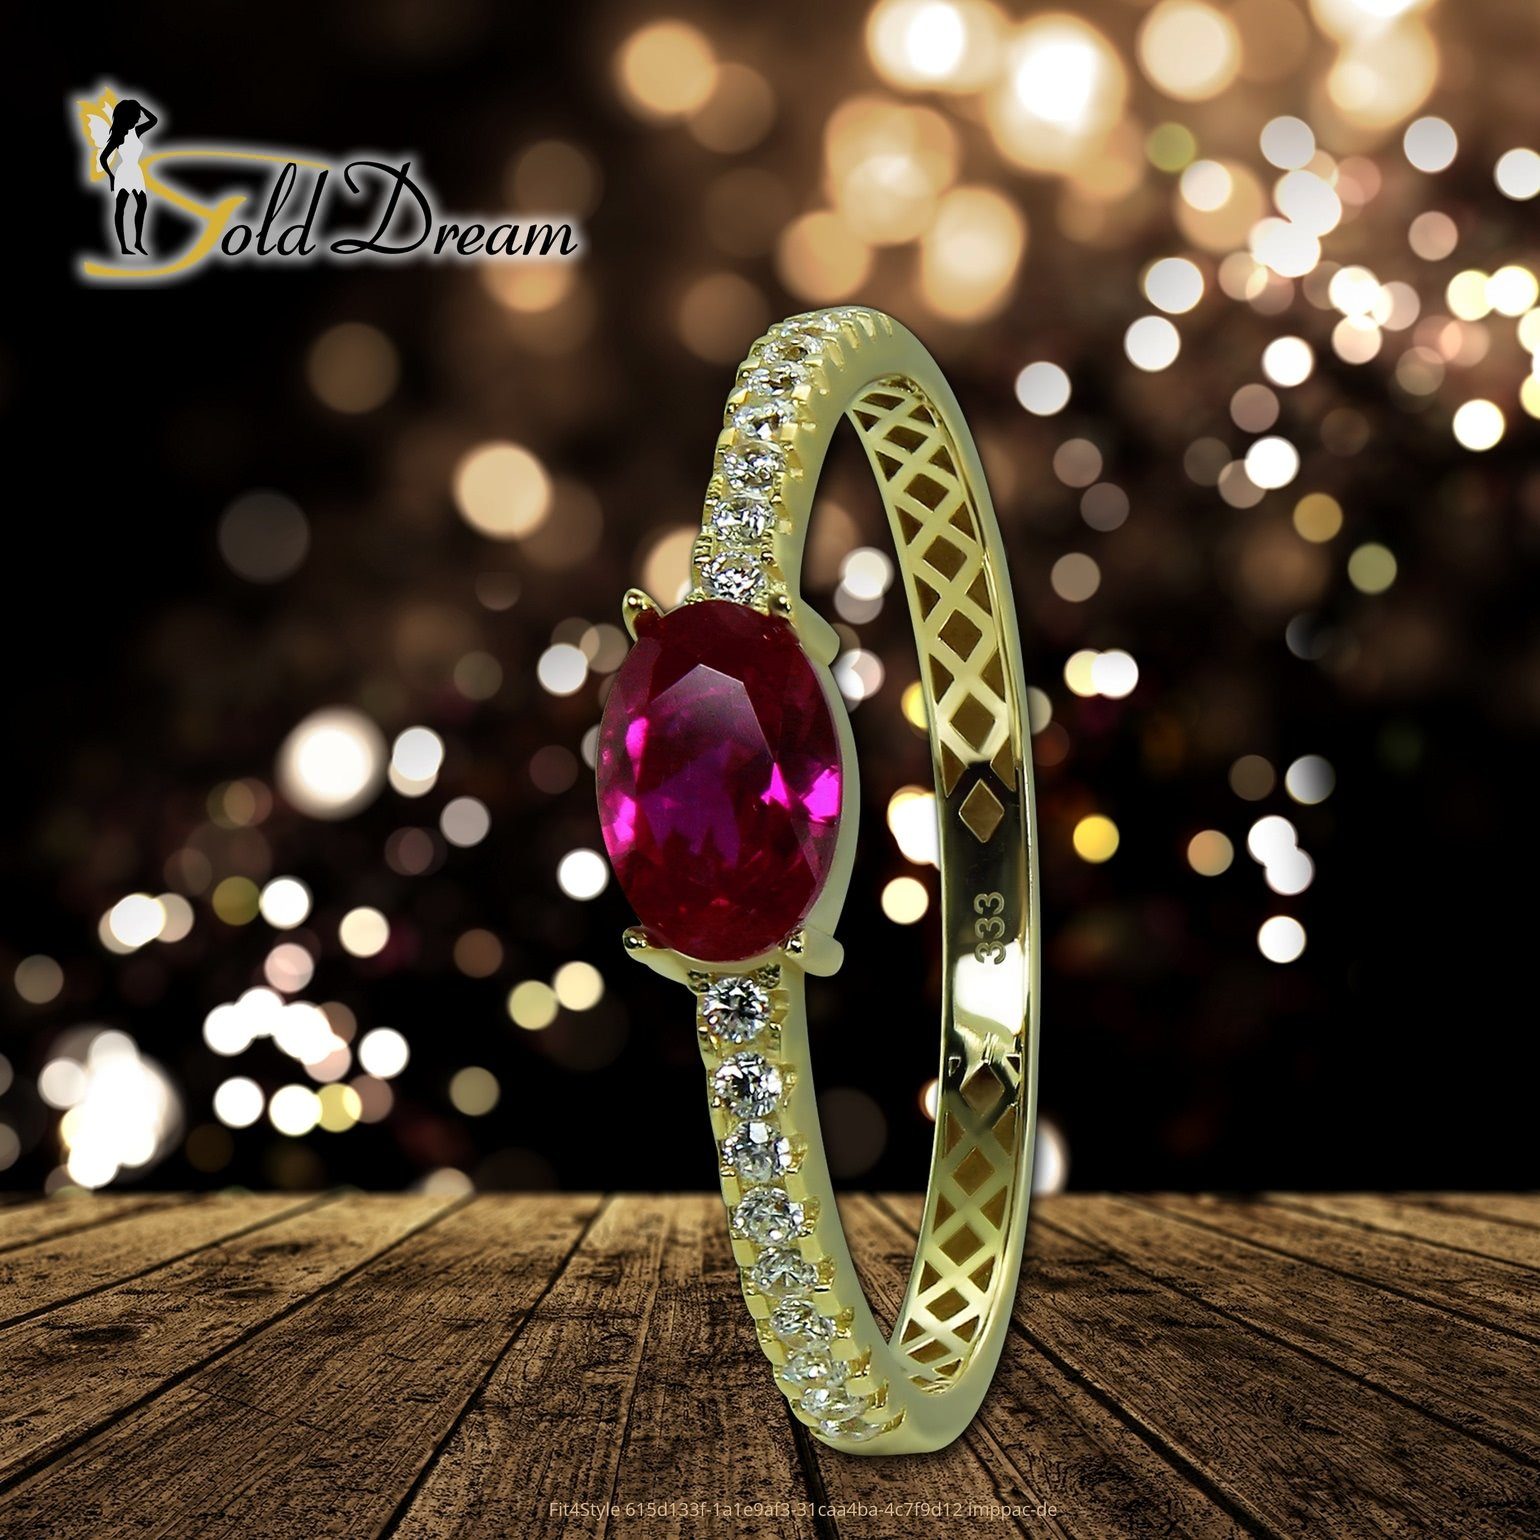 Gr.58 333 Farbe: Gelbgold Ring weiß, - GoldDream pink 8 gold, Goldring Beauty Damen GoldDream Gold (Fingerring), Beauty Ring Karat,